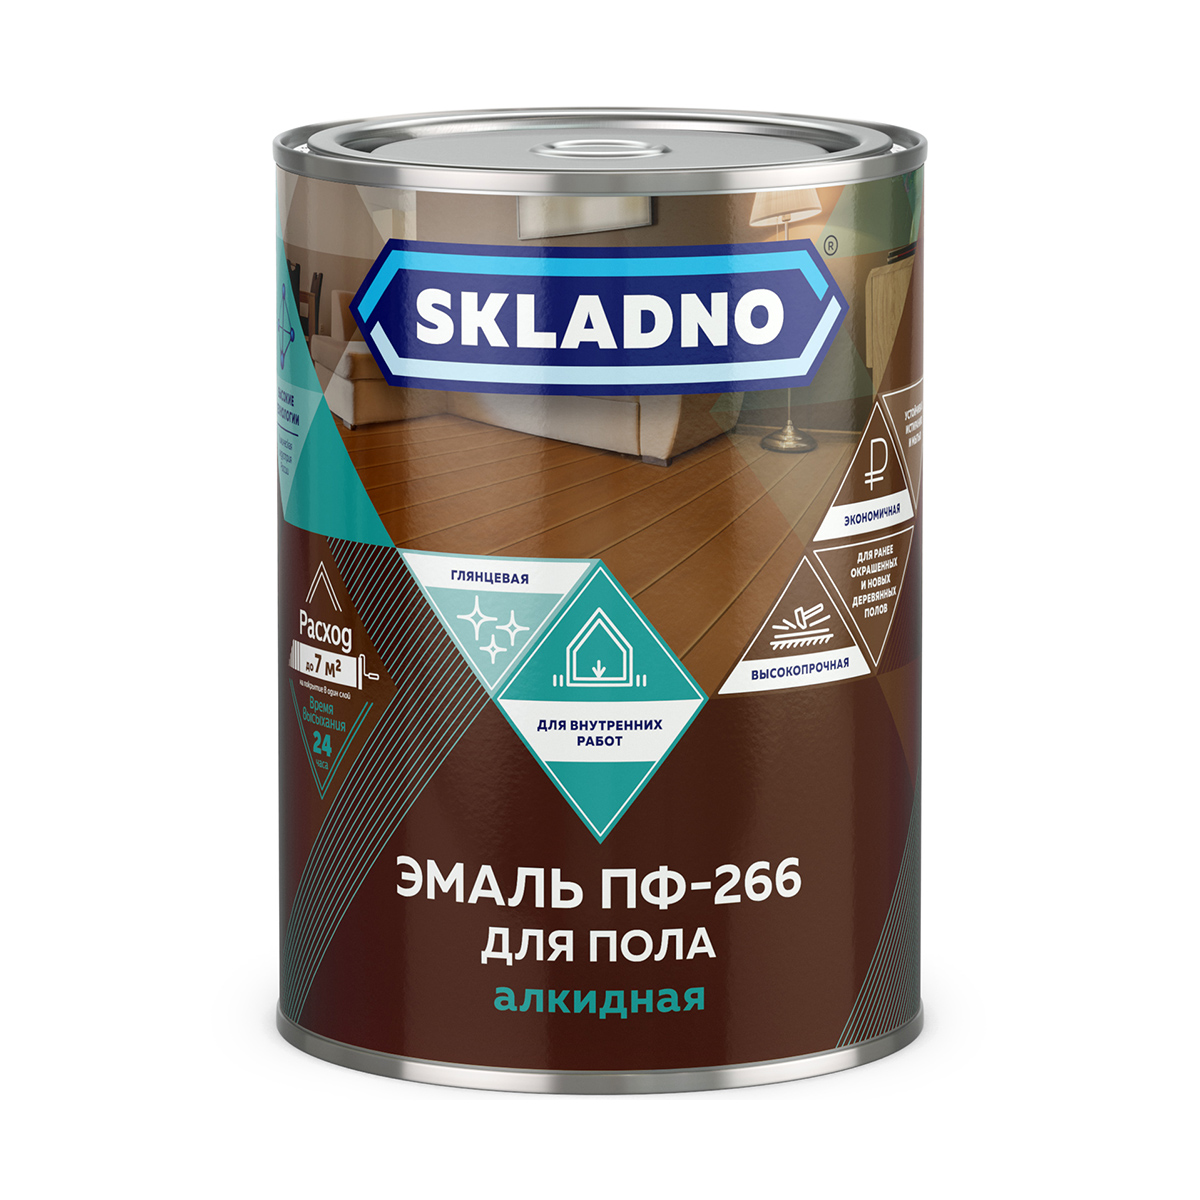 Эмаль ПФ-266 для пола Skladno, алкидная, глянцевая, 2,6 кг, желто-коричневая v i pet пеленка впитывающая многоразовая коричневая